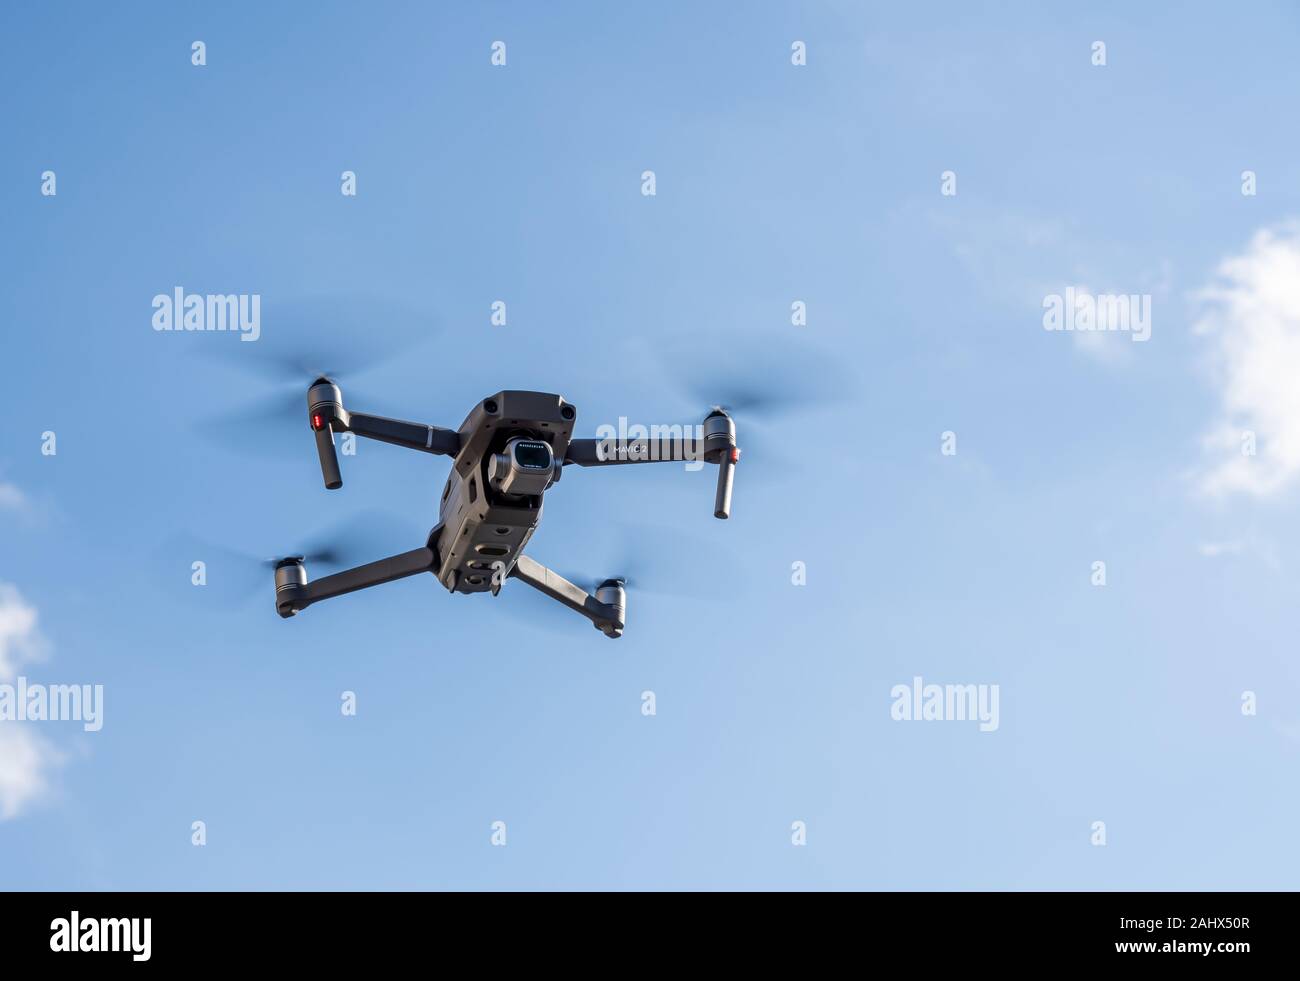 Morgantown, WV - 1 janvier 2020 : DJI quadcopter Mavic 2 Pro ou drone planant dans le ciel bleu Banque D'Images